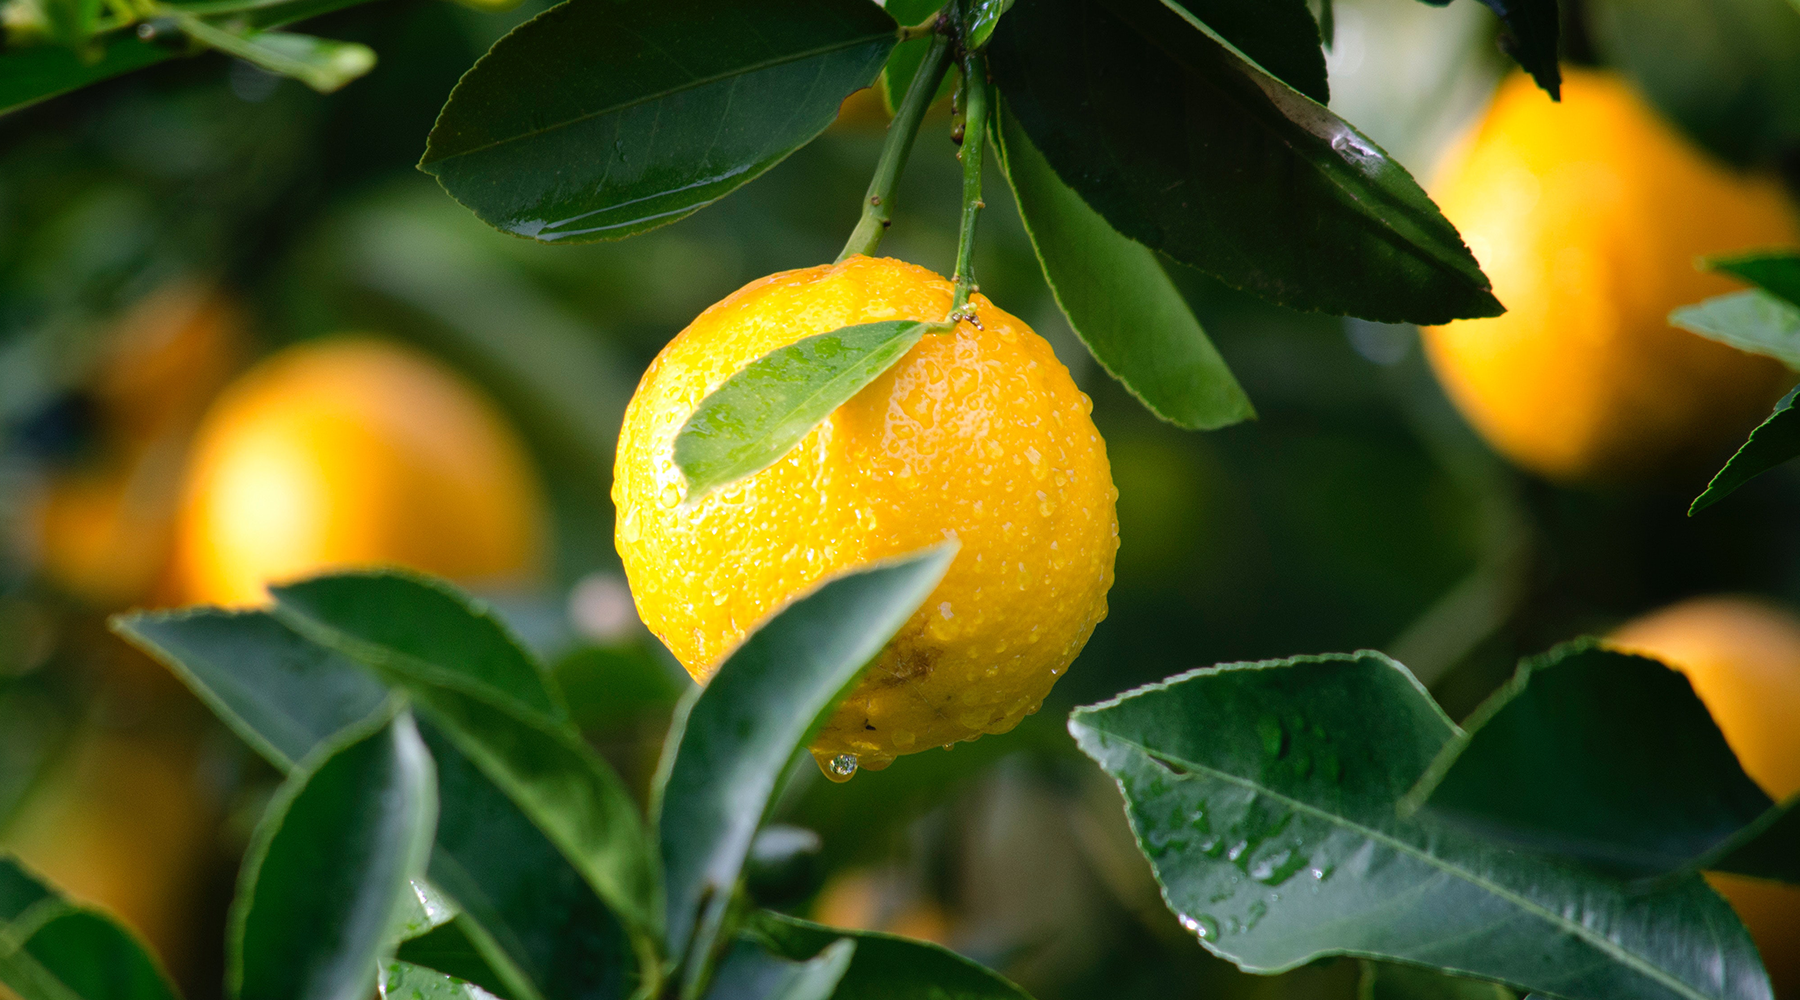 Huile essentielle de citron : ses bienfaits et comment l'utiliser